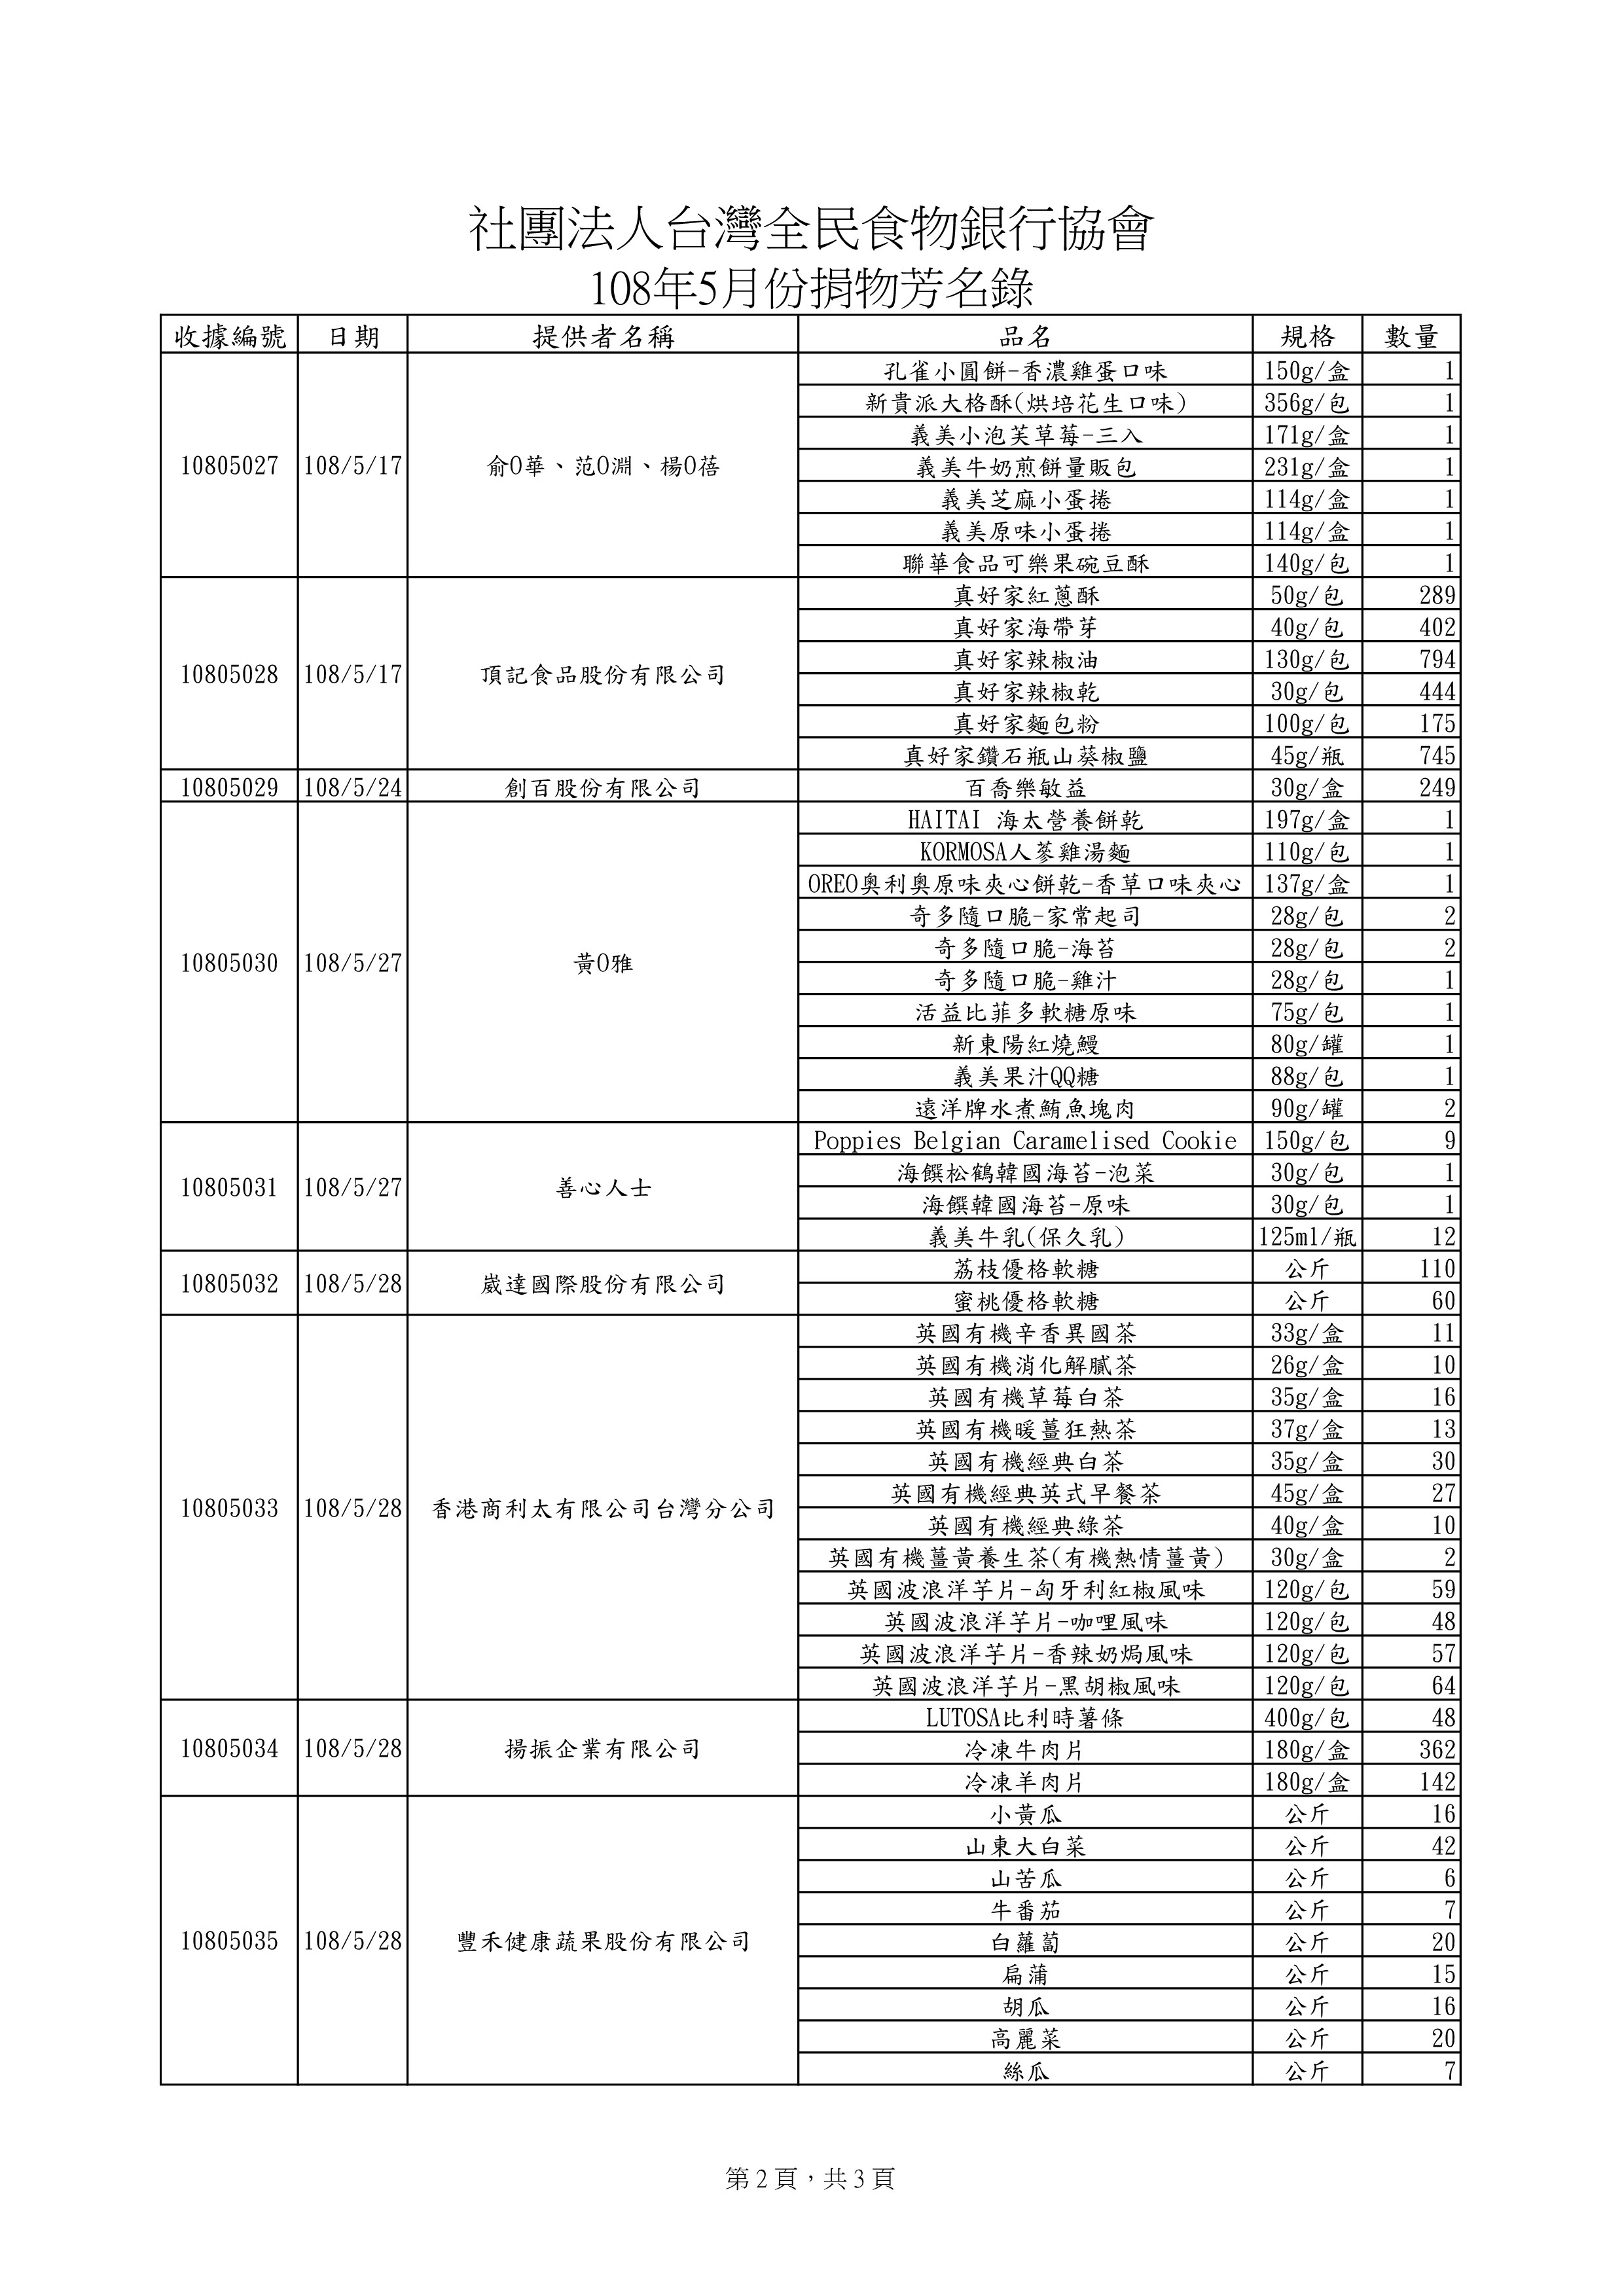 捐贈物品清單2019-5月份(系統報表)-1.jpg